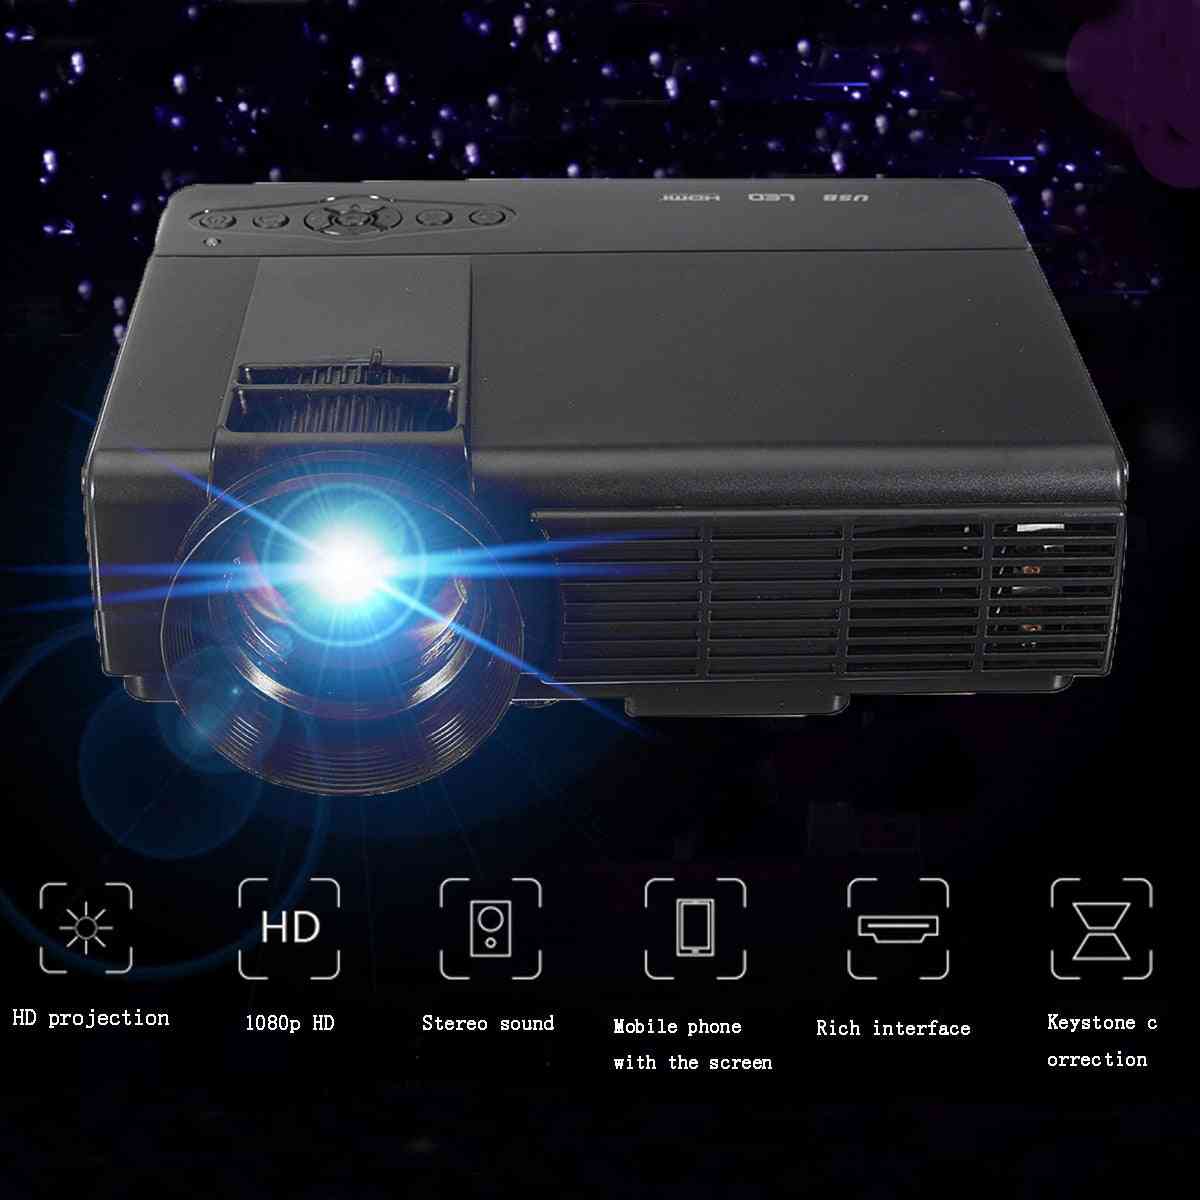 50 lumen 3d 1080p projektor, fuld hd hjemmebiograf multimedia vga / usb / hdmi / led projektor, lcd-beamer-vga -